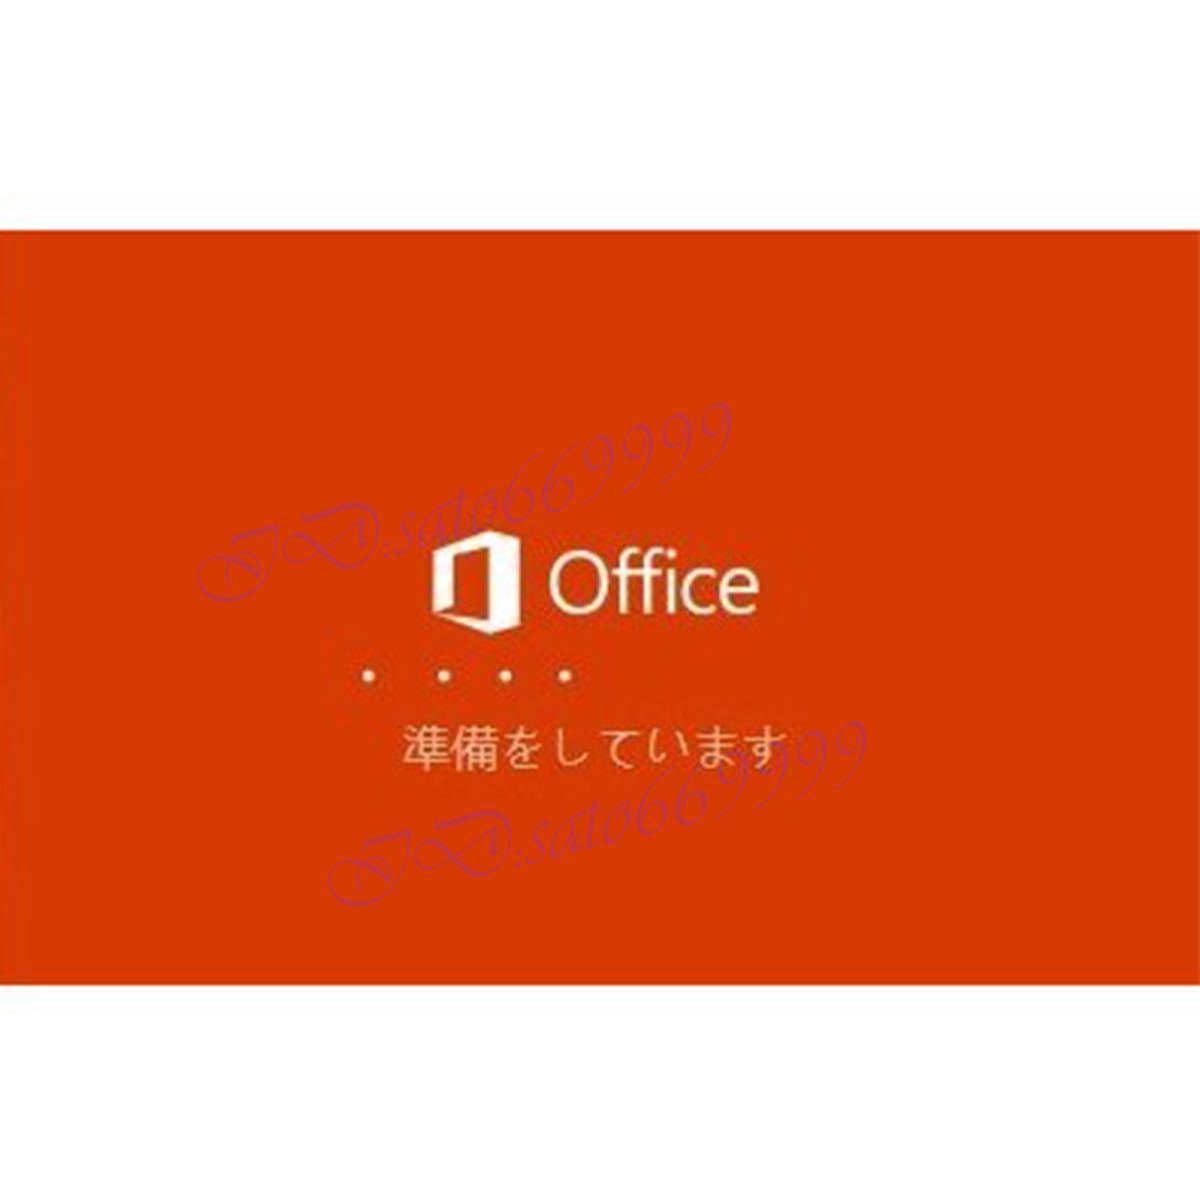 【数量限定即決】Office 2021 Professional Plus プロダクトキー32/64bit版 日本語対応 正規品 認証保証 永続ライセンス 手順書付き2の画像2